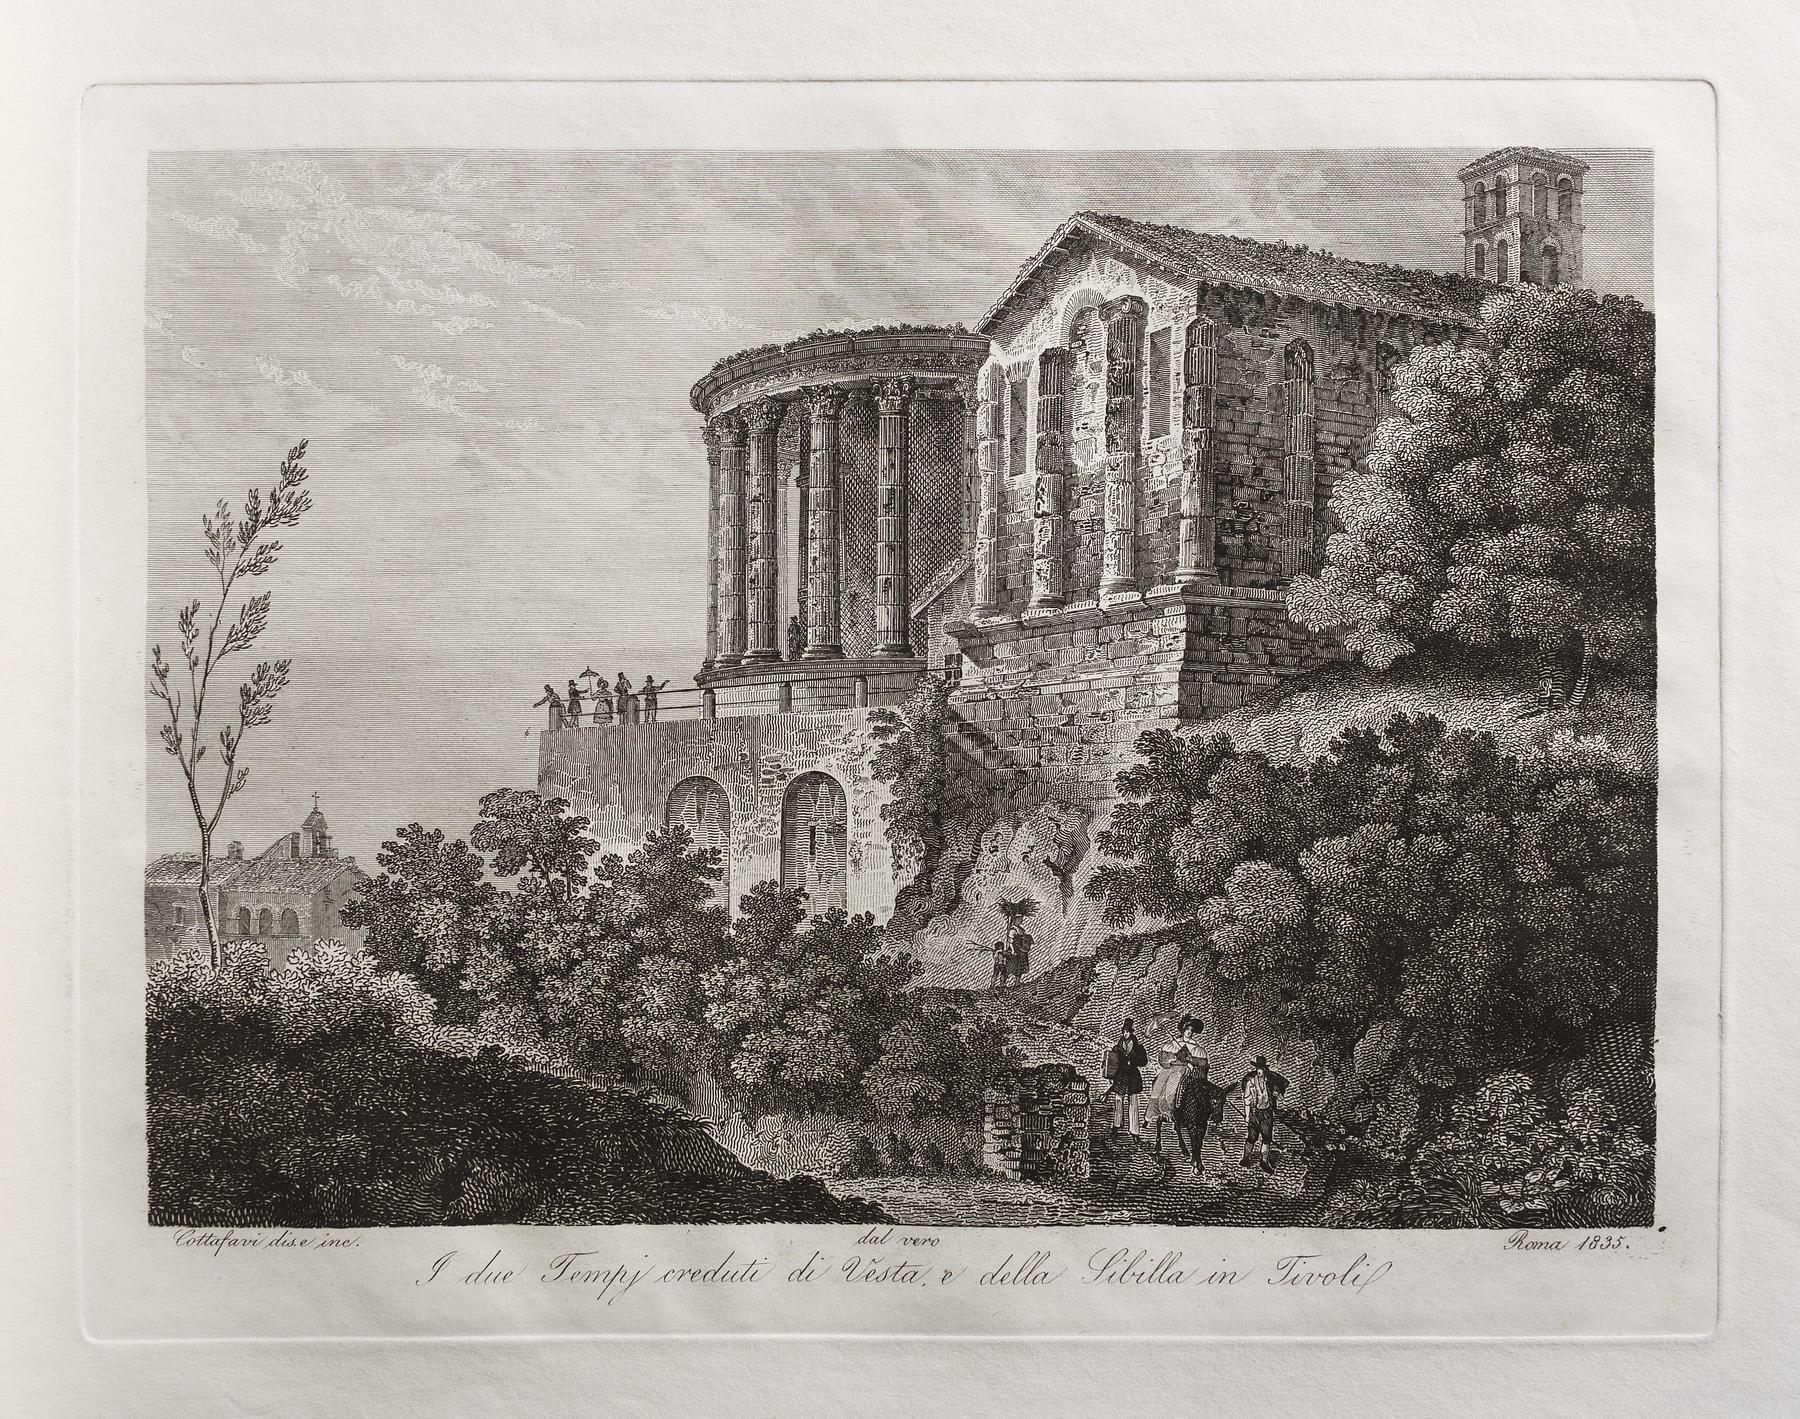 The Two Temples Vesta and Sibilla at Tivoli, E466,8